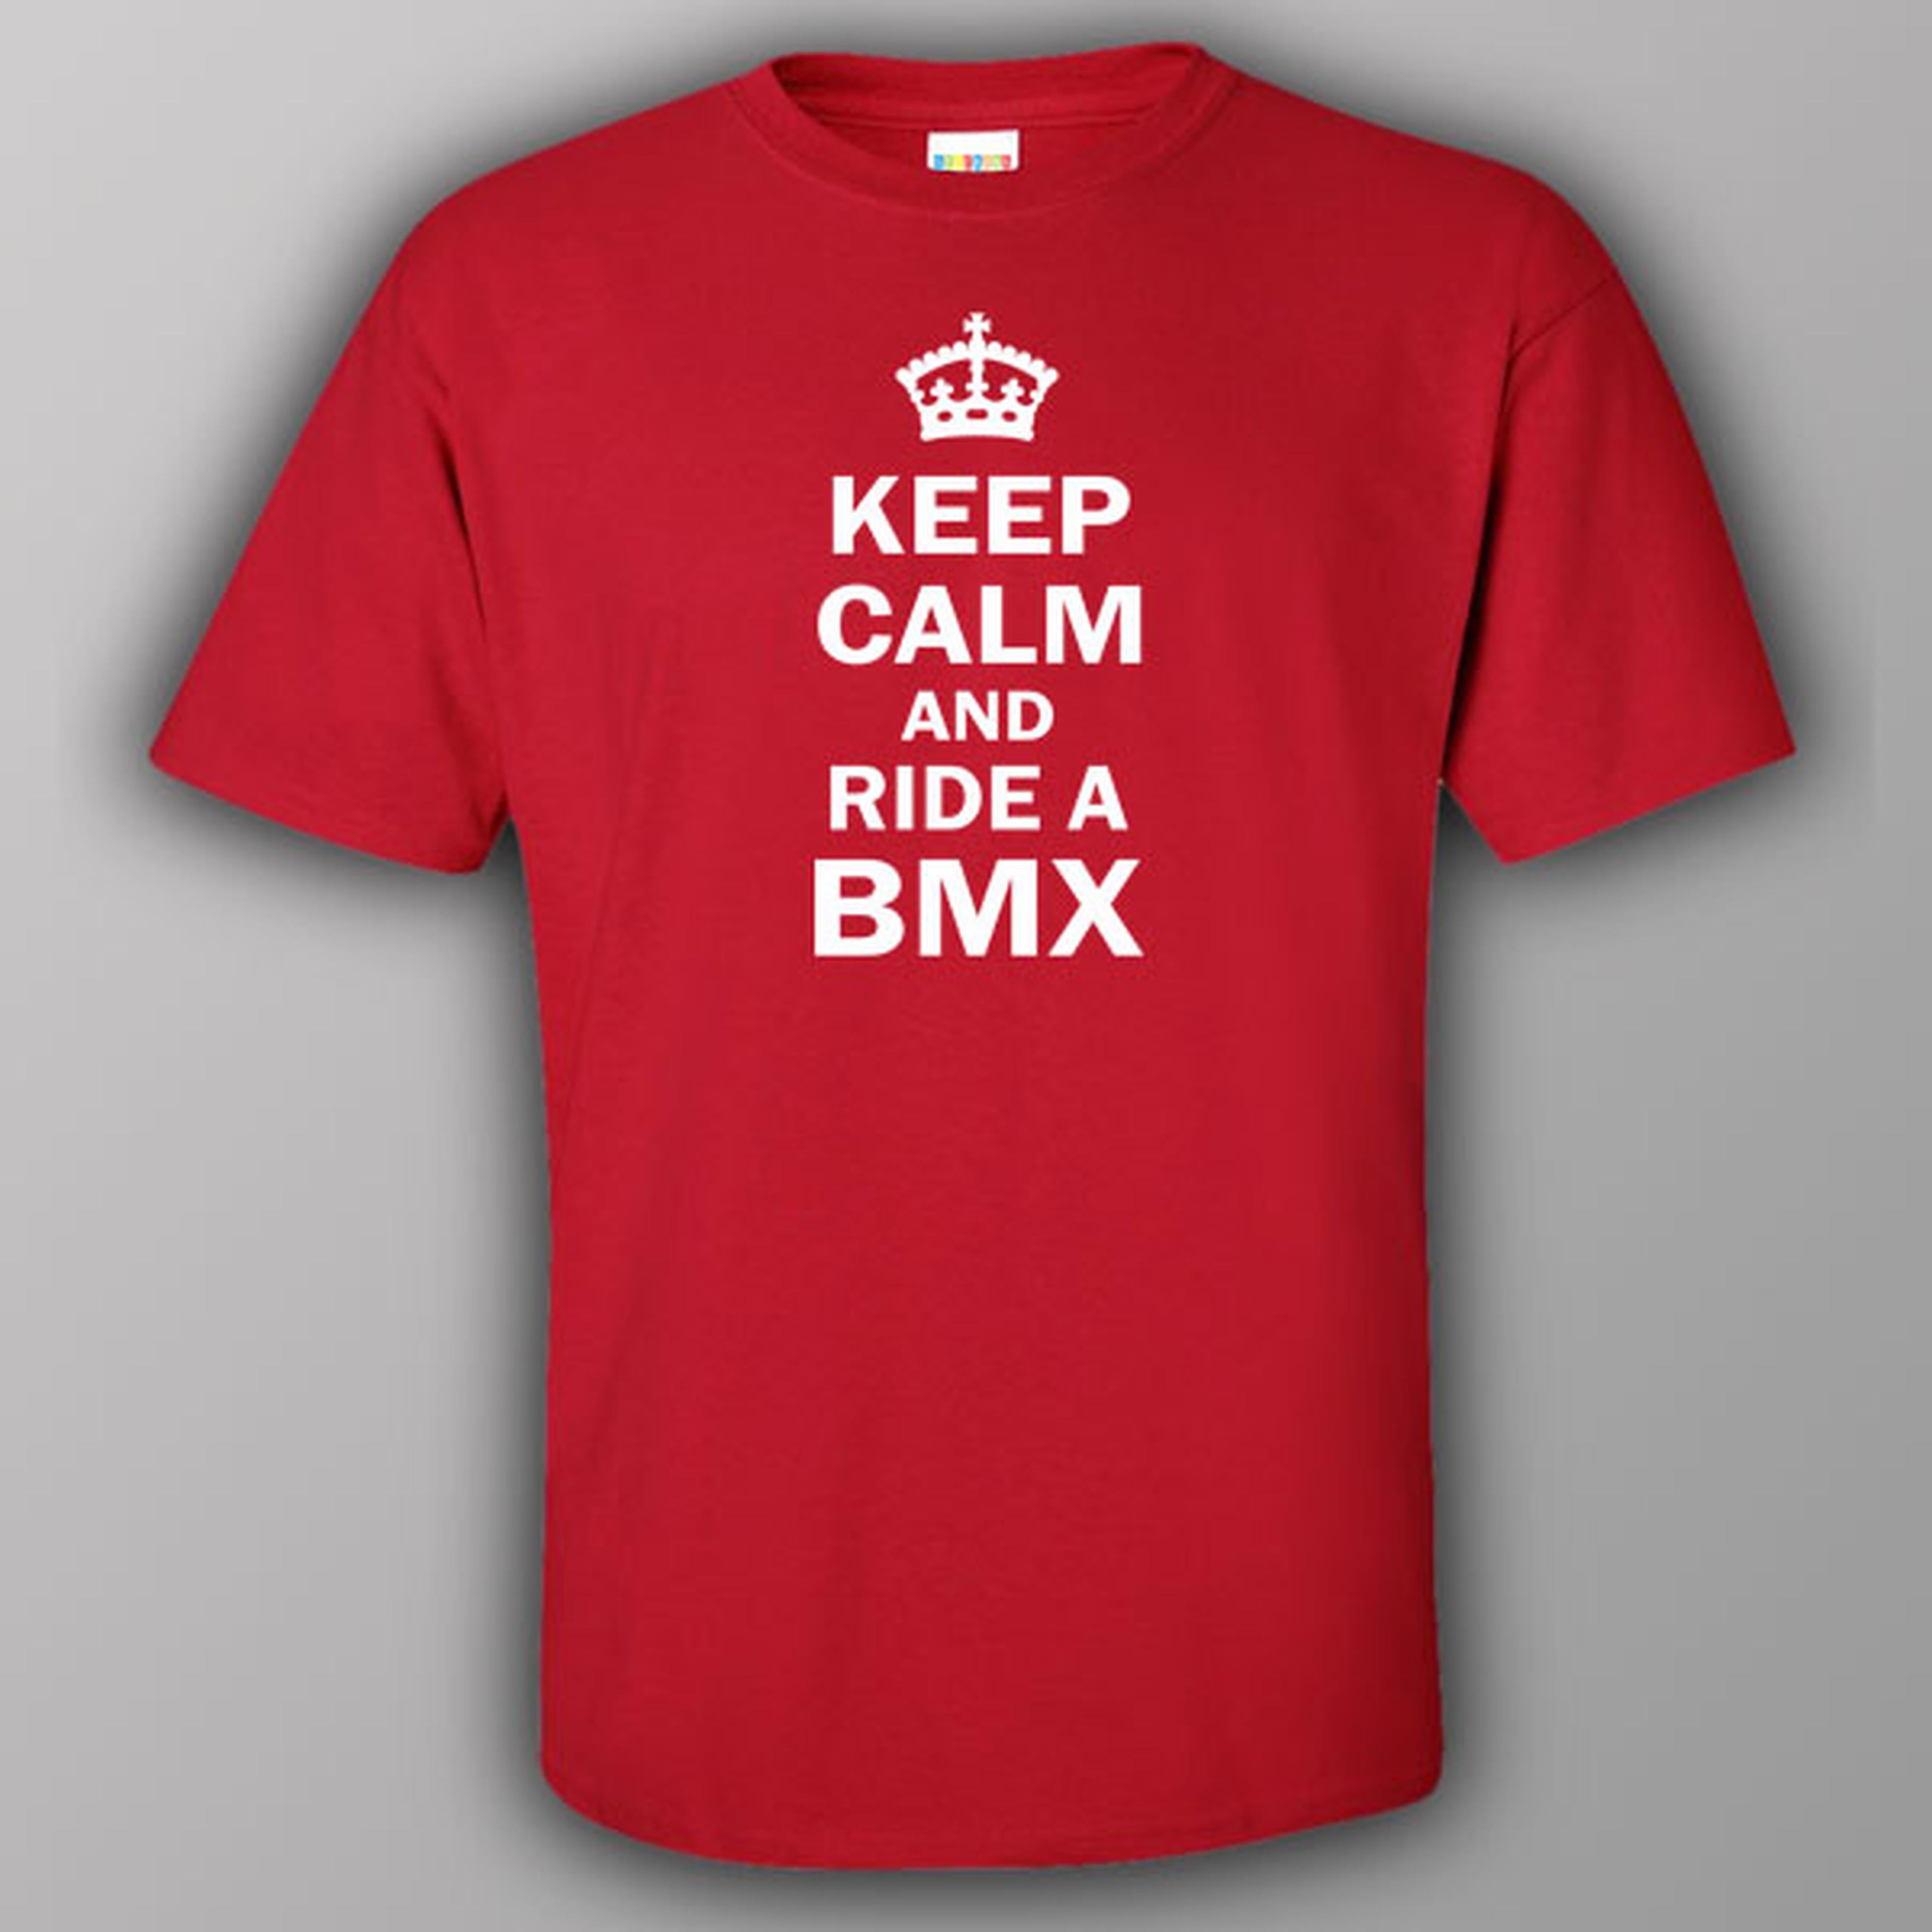 Keep calm and ride BMX - T-shirt